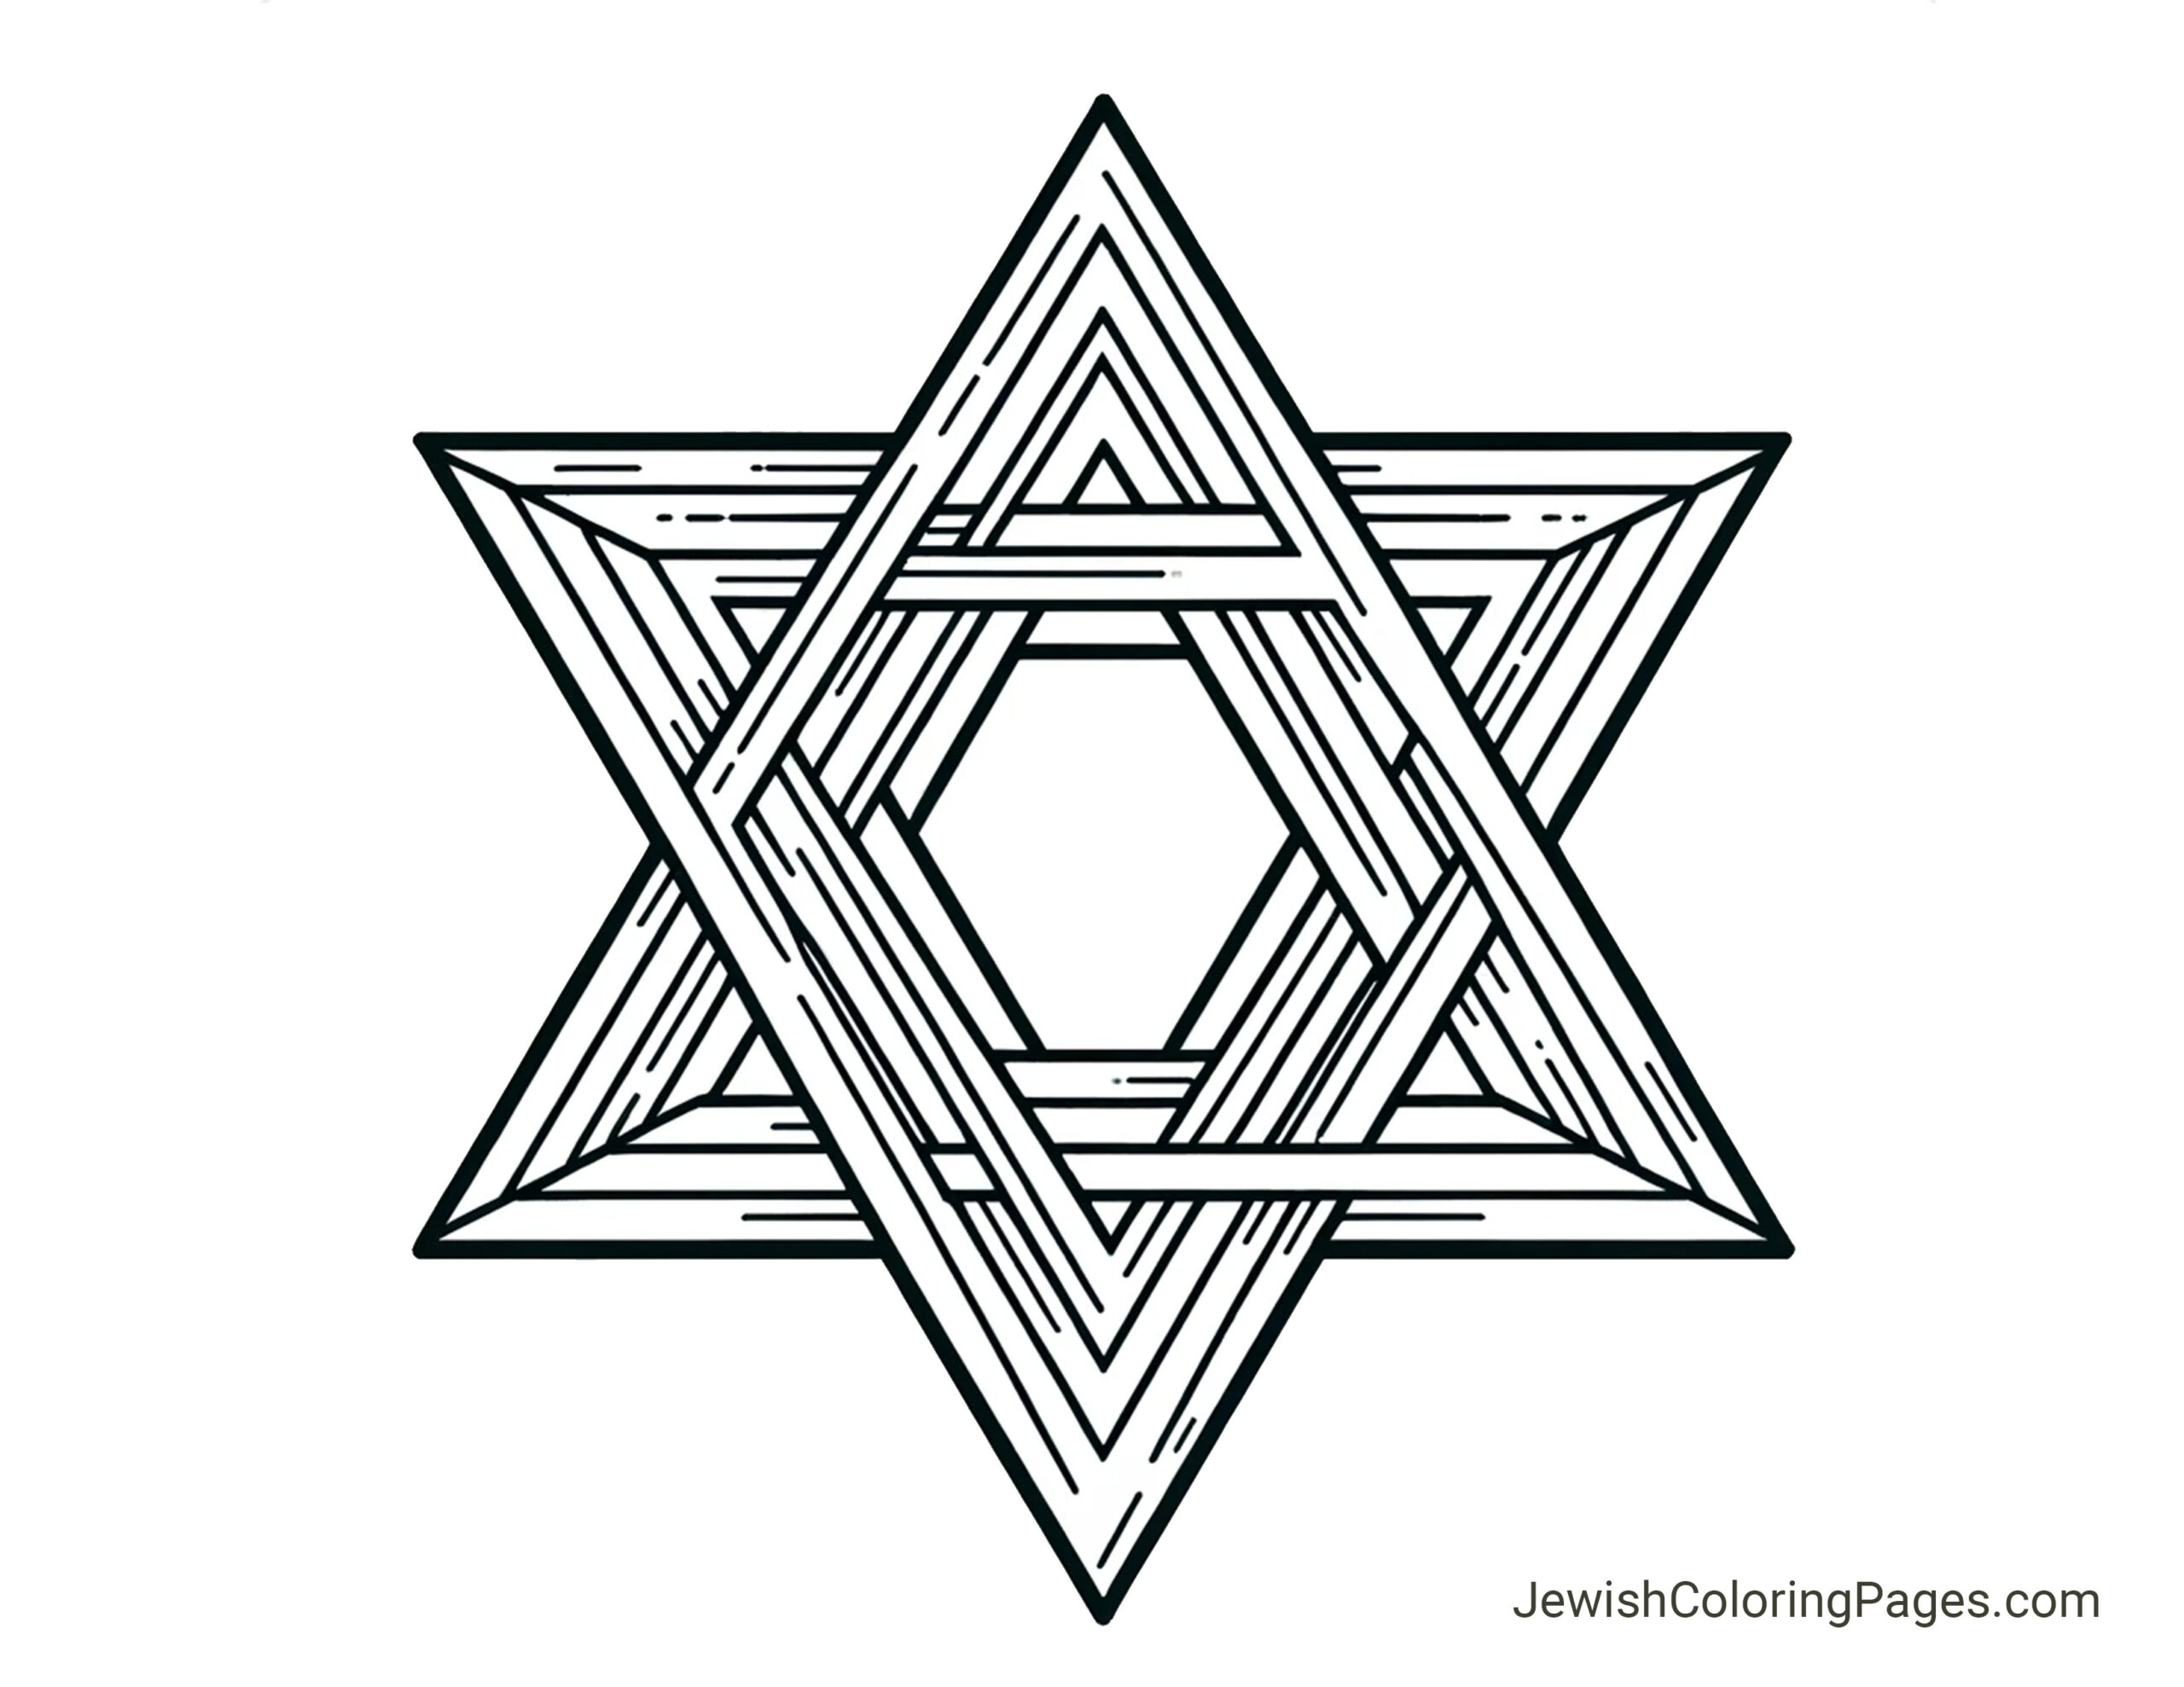 Layered Jewish Star of David coloring page